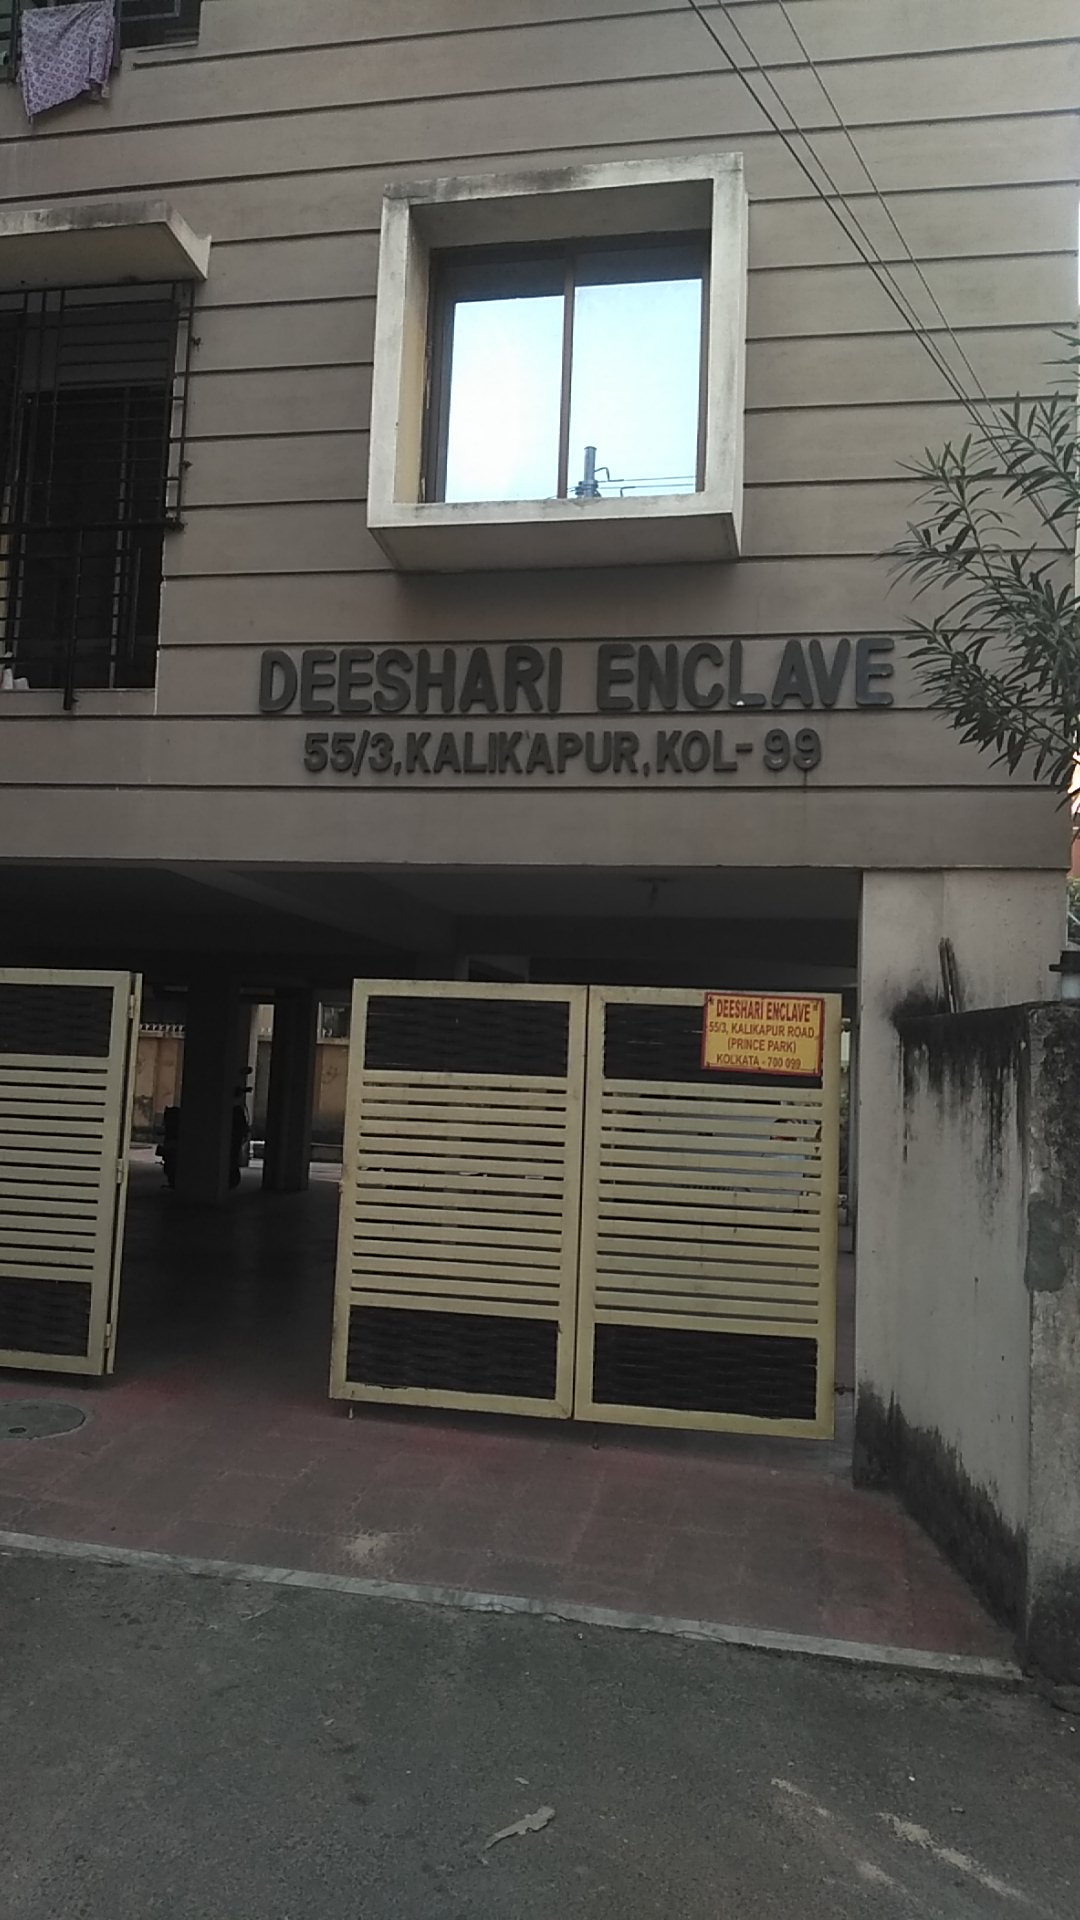 Deeshari Enclave